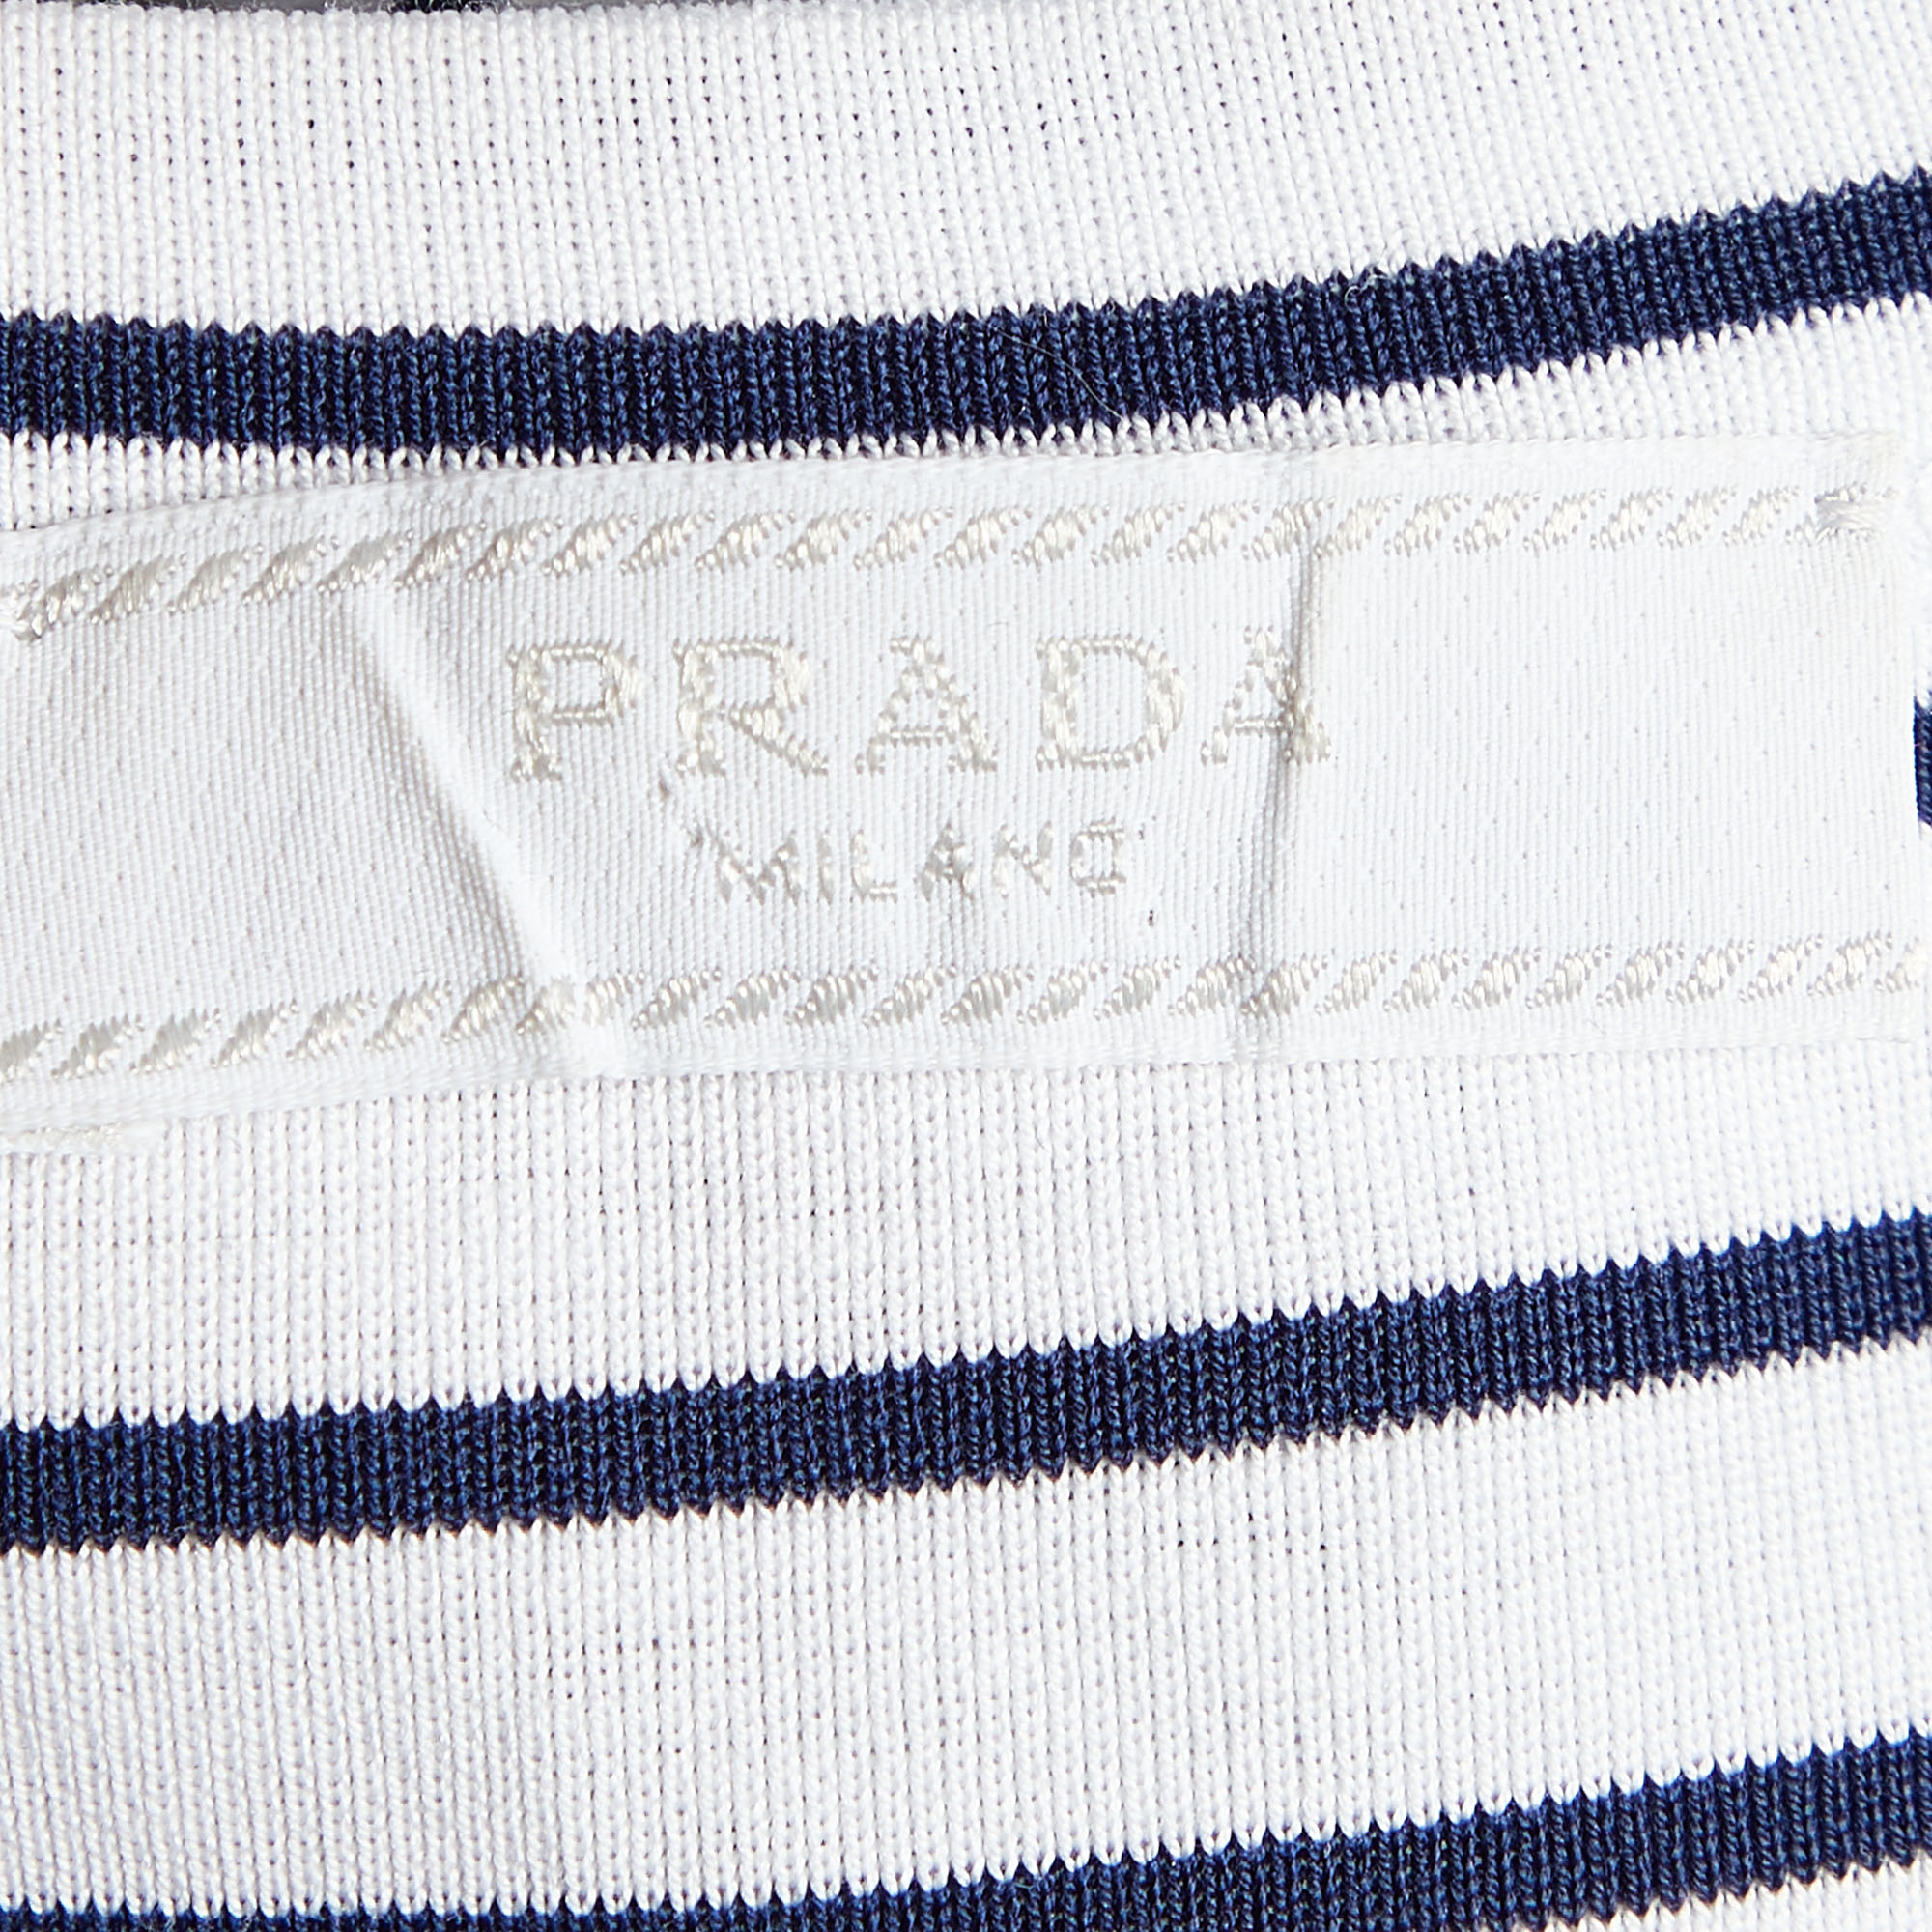 Prada White/Blue Striped Cotton Logo Detail Sleeveless T-Shirt XL